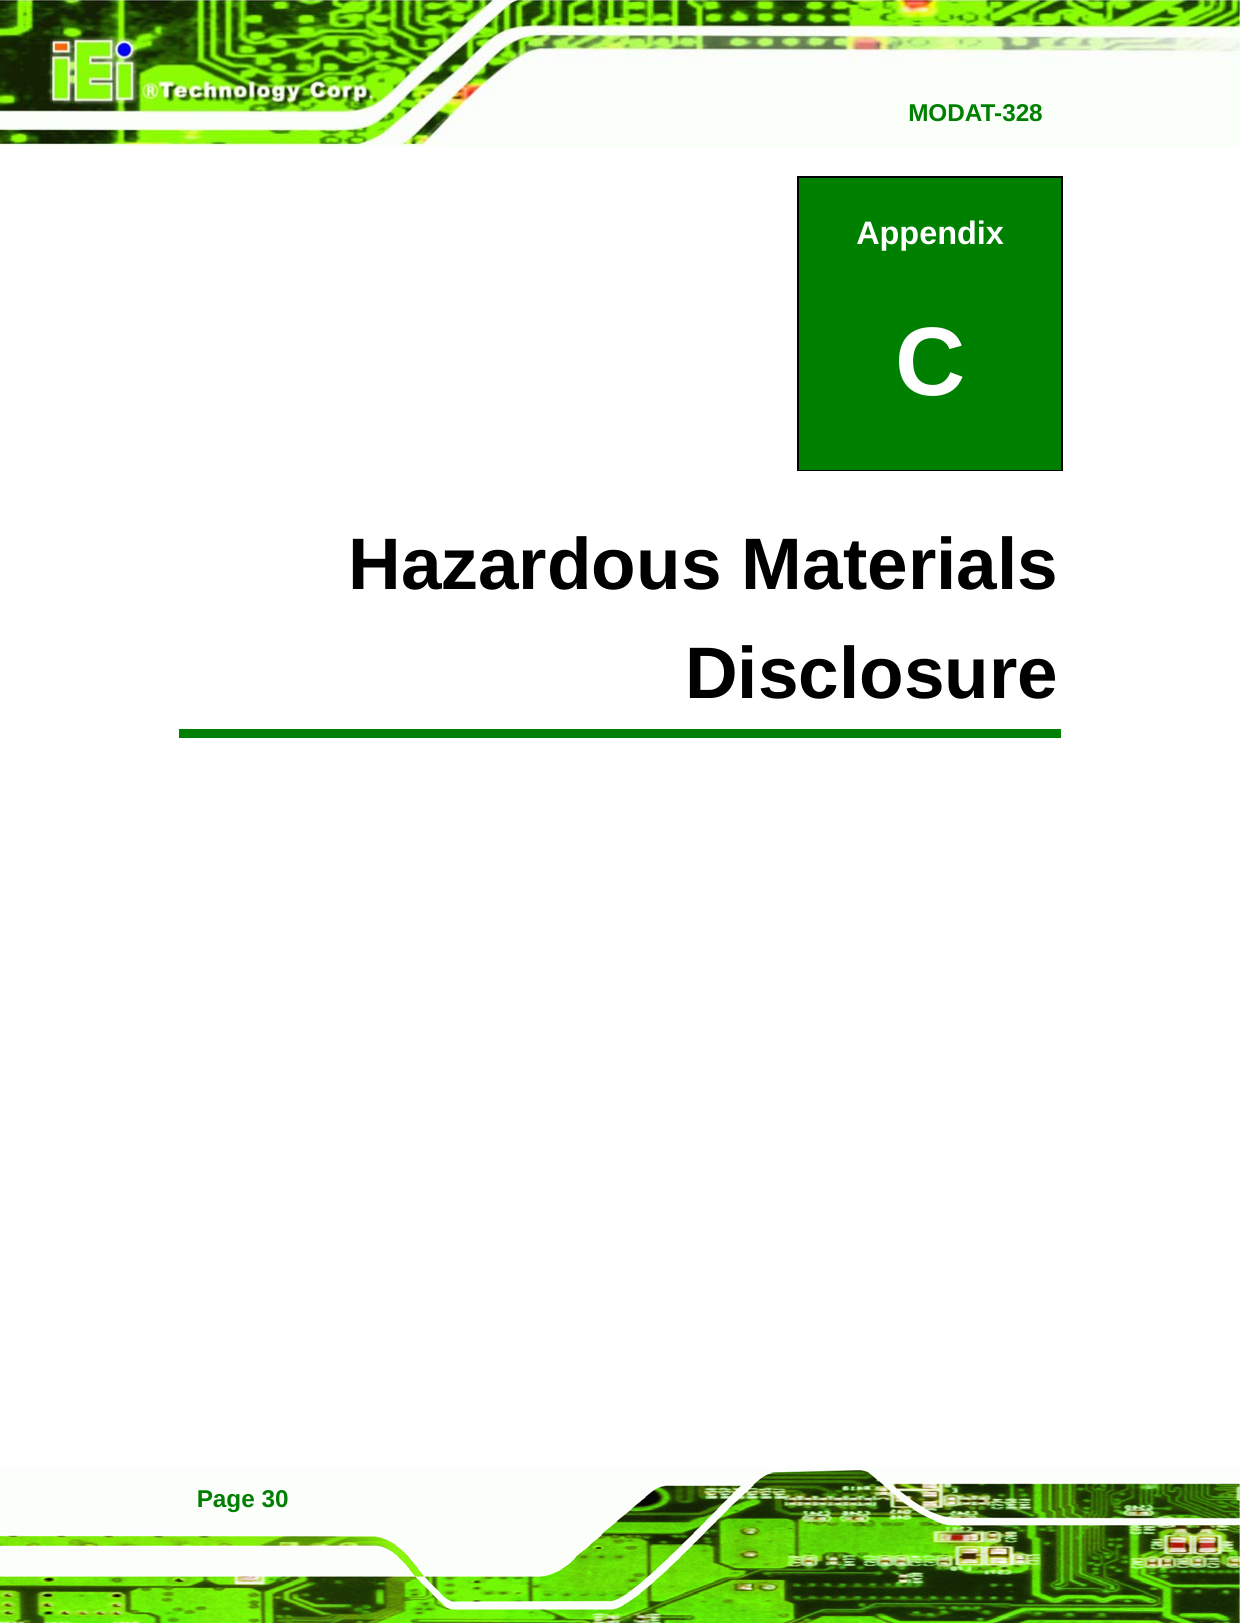   MODAT-328Page 30 Appendix C C Hazardous Materials Disclosure 